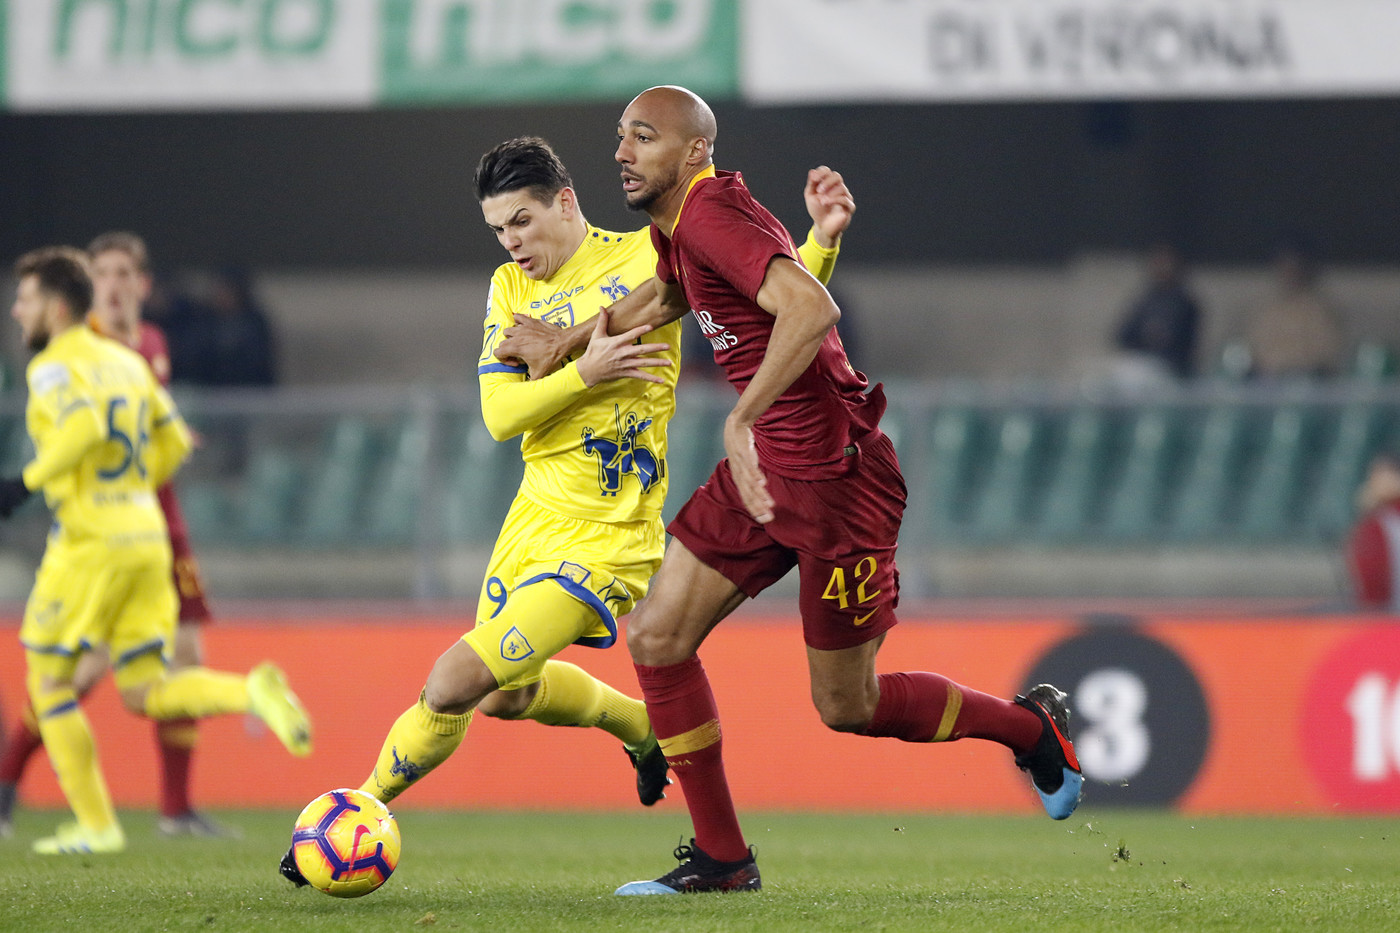 Serie A, Chievo-Roma 0-3 | Il Fotoracconto